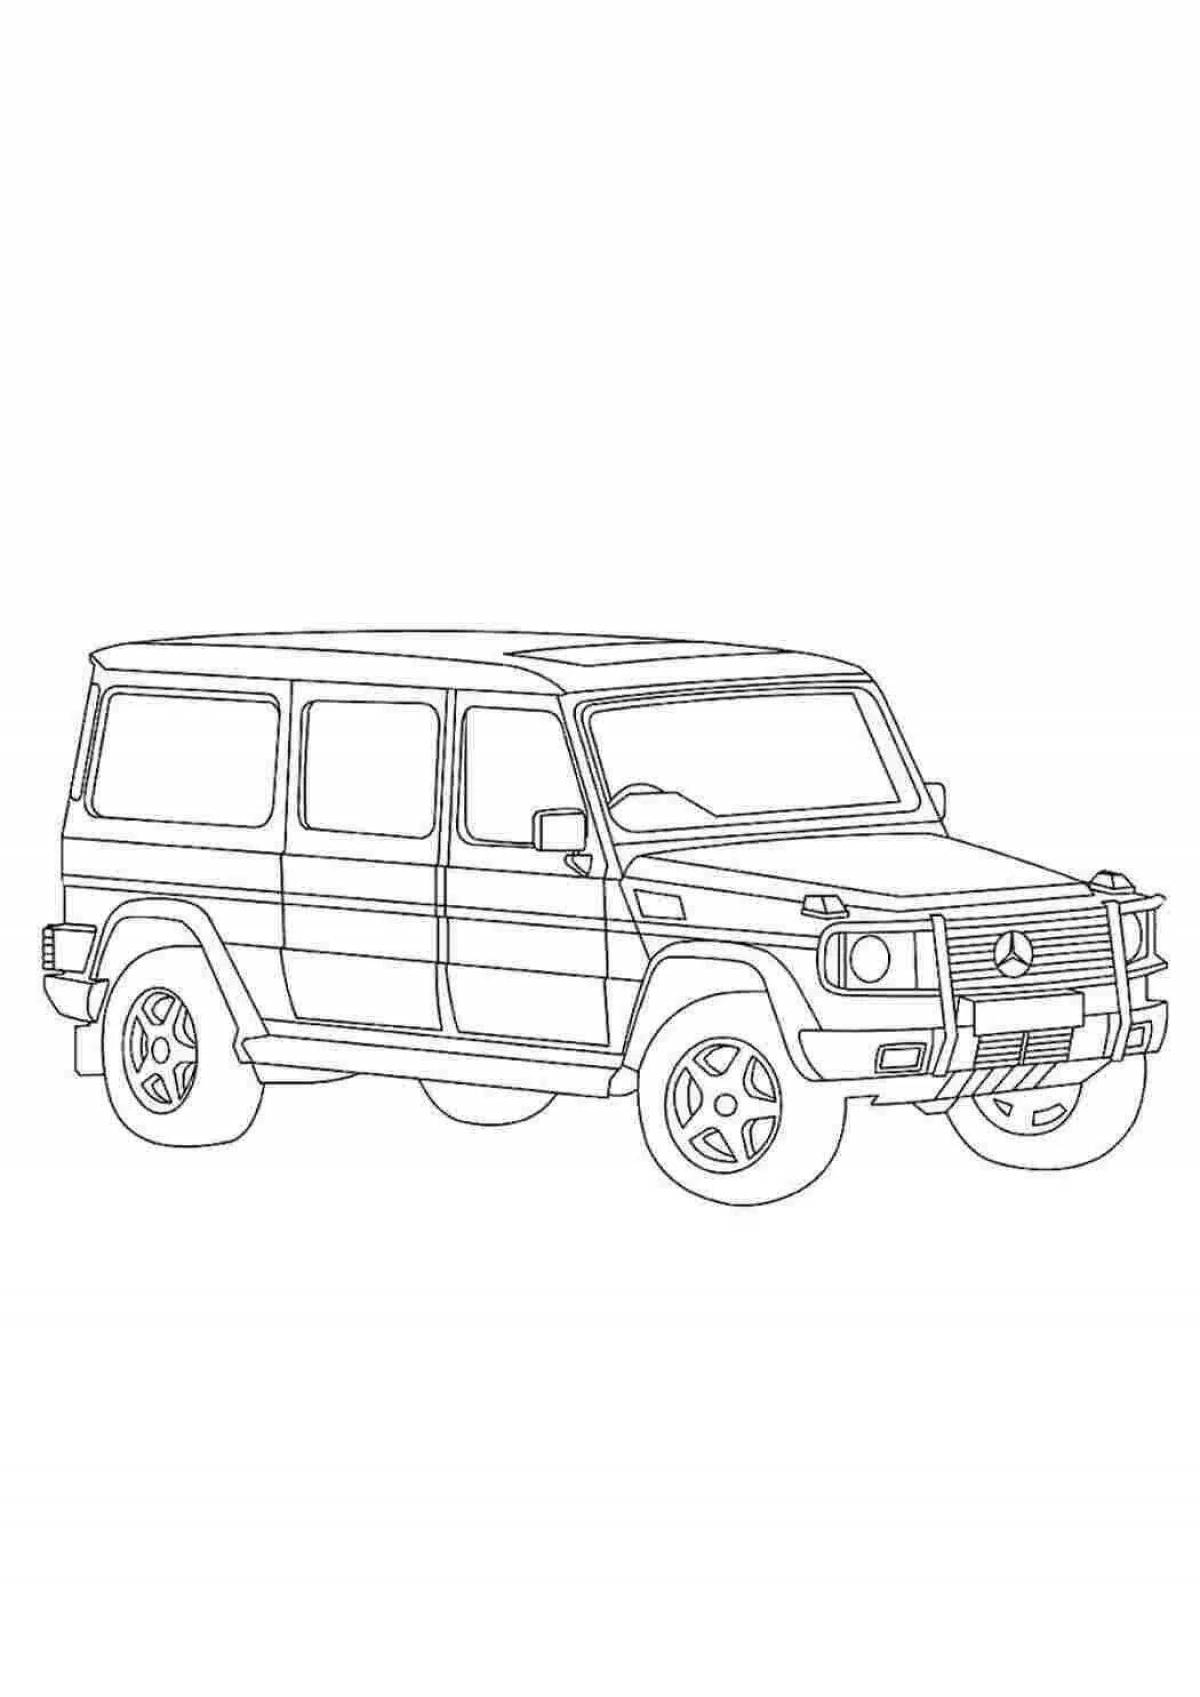 Living jeep gelik coloring